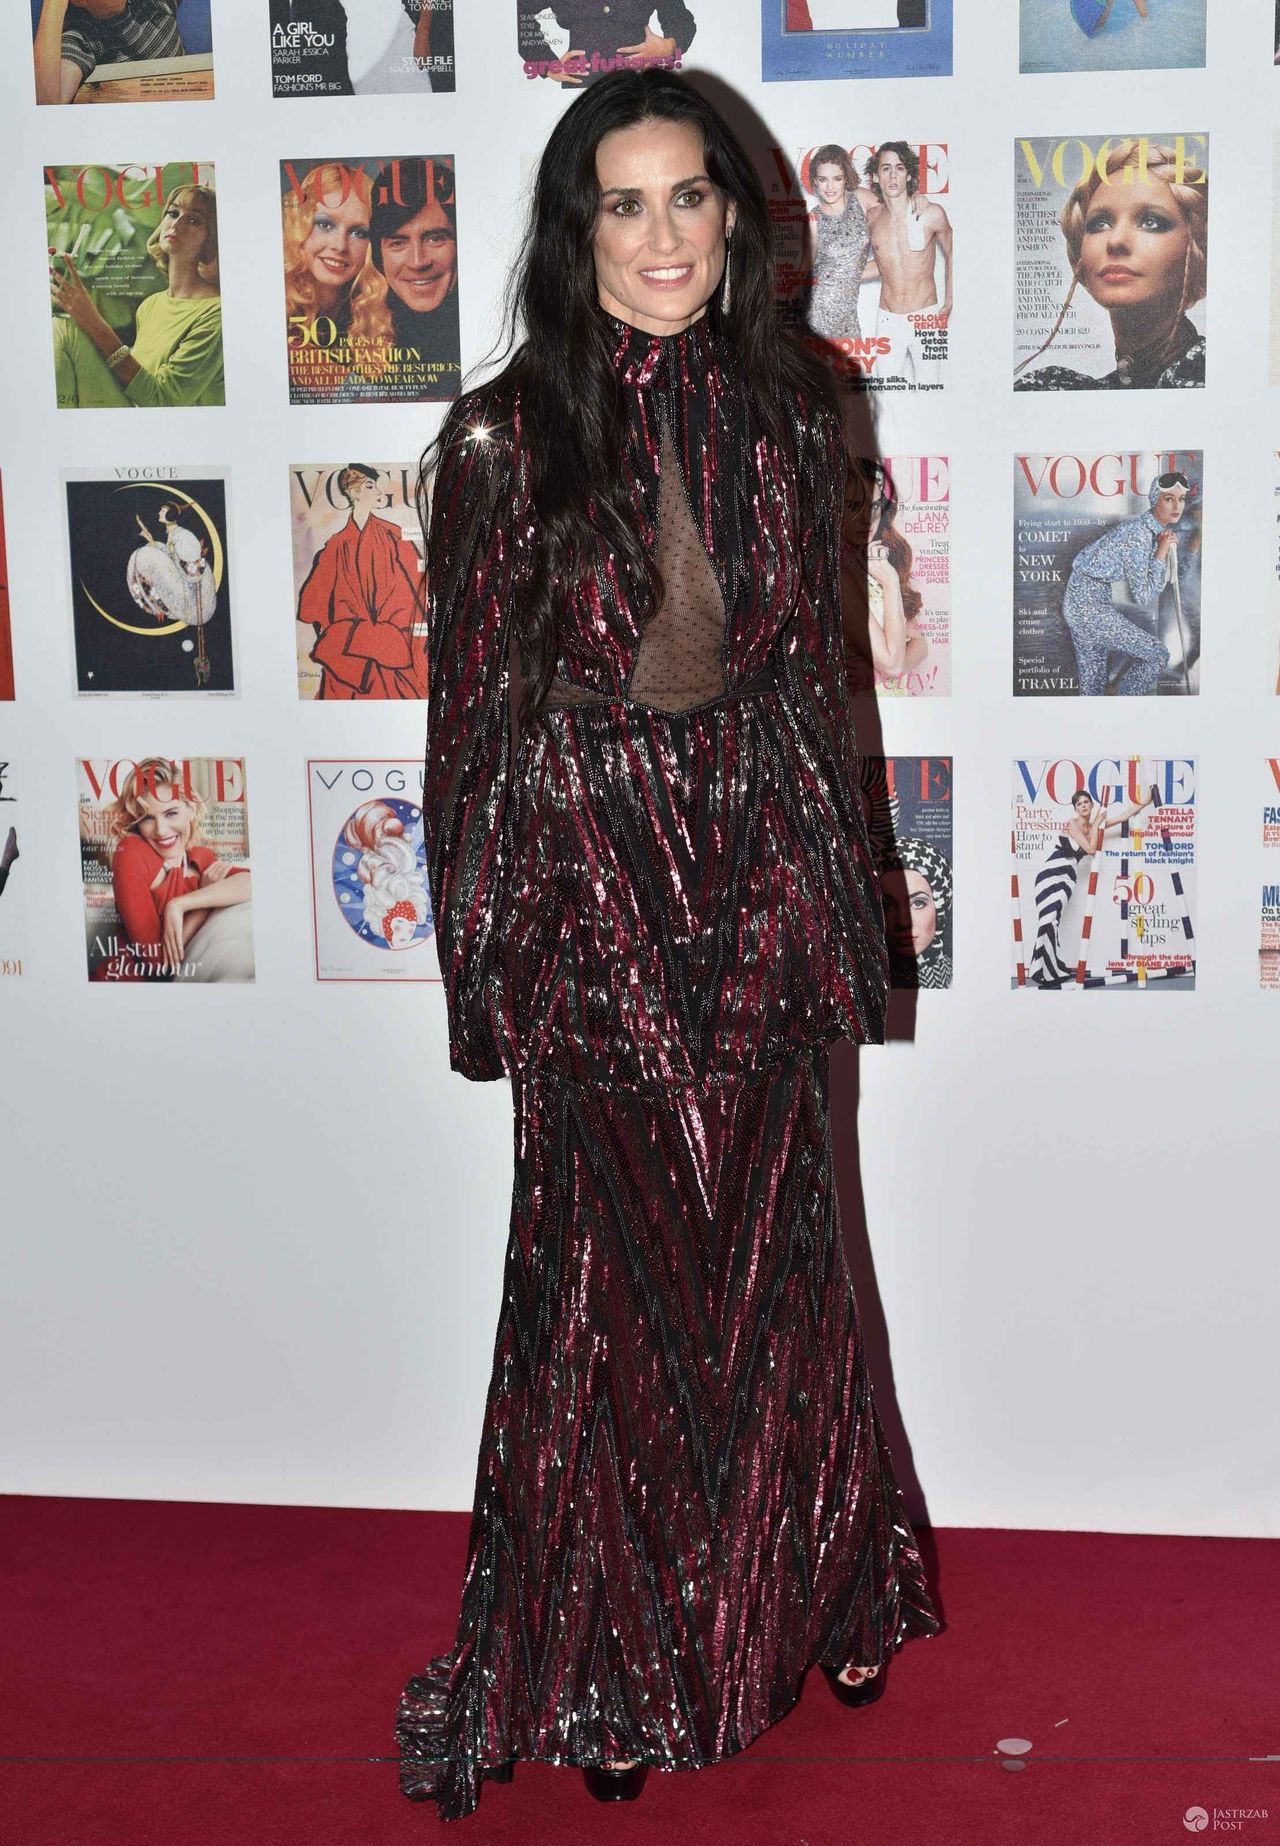 Suknia: Roberto Cavalli. Demi Moore, gala z okazji 100 lat brytyjskiej edycji "Vogue" (fot. ONS)